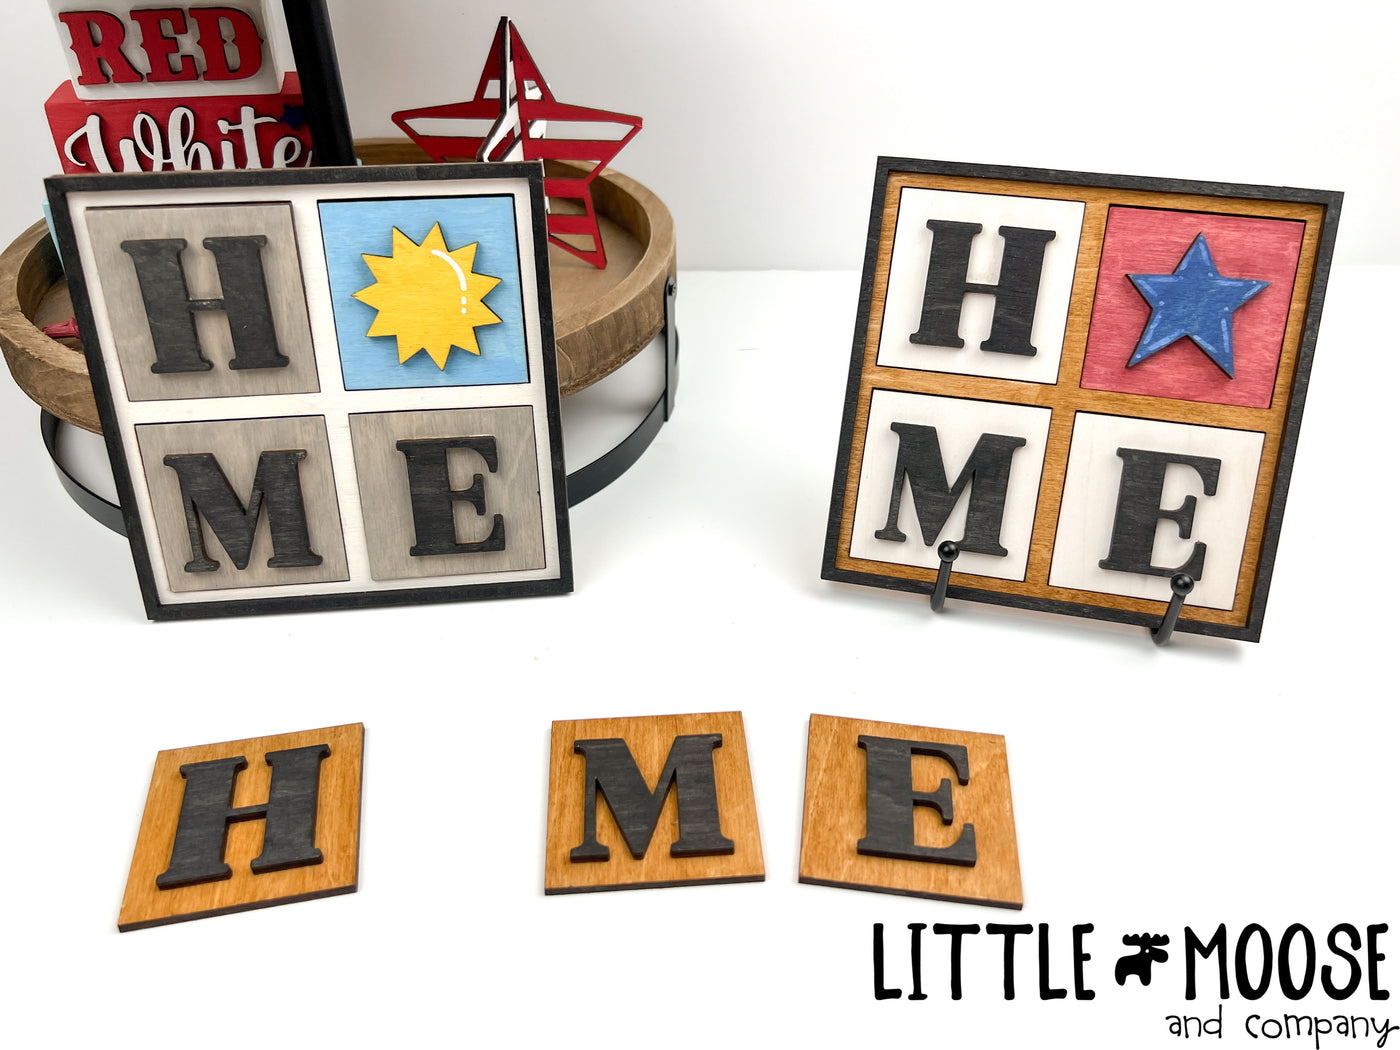 Mini Square Insert - H,M and E letter set